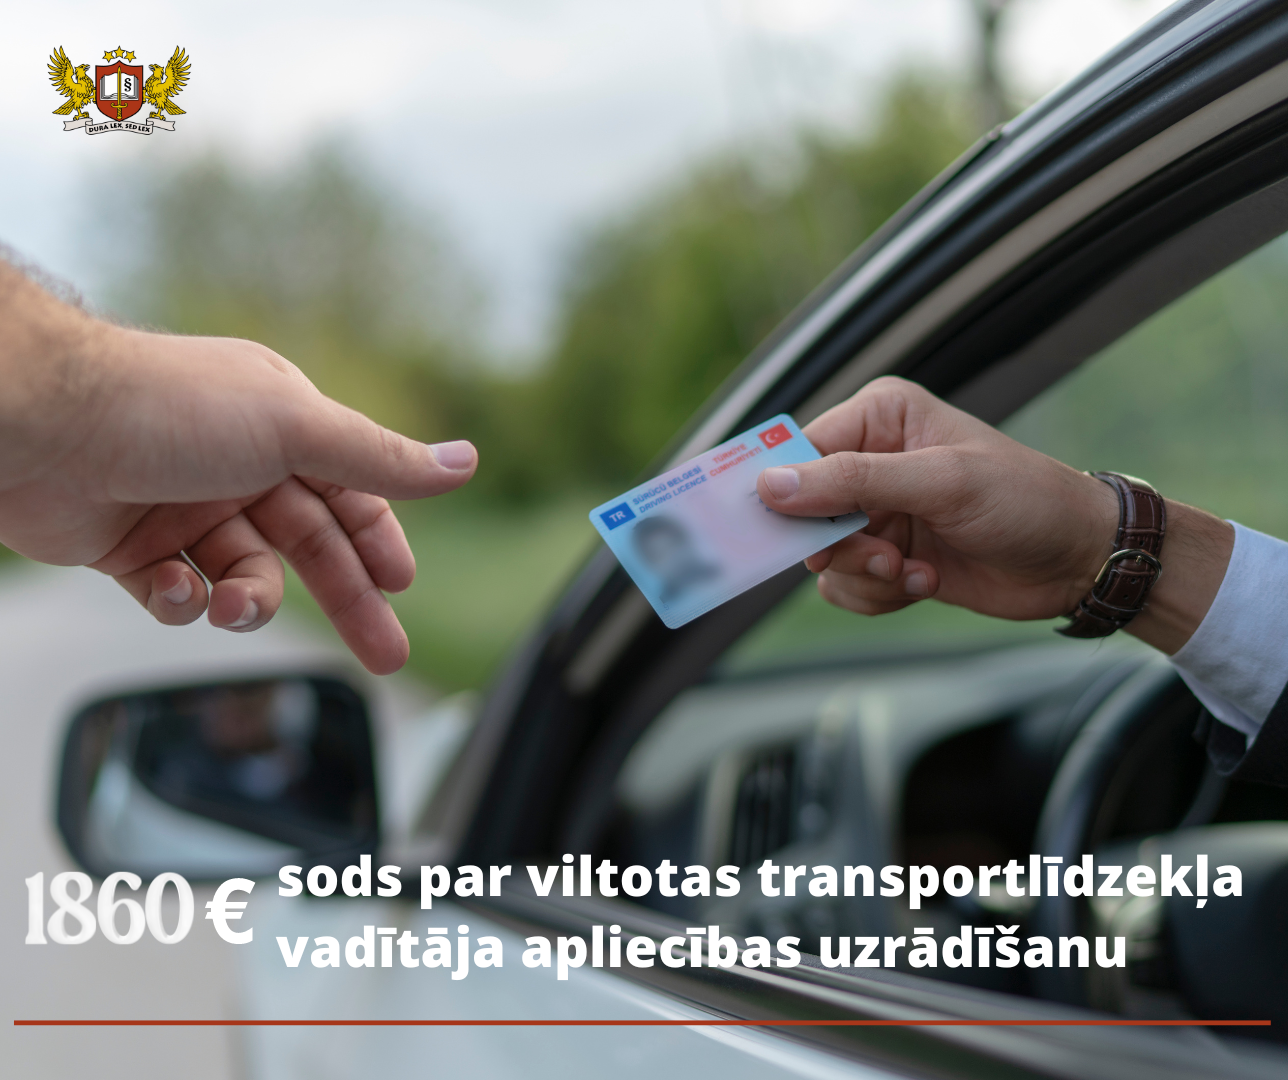 Attēls: Par viltotas transportlīdzekļa vadītāja apliecības uzrādīšanu robežpārbaudes laikā personai nosaka 1860 eiro lielu naudas sodu